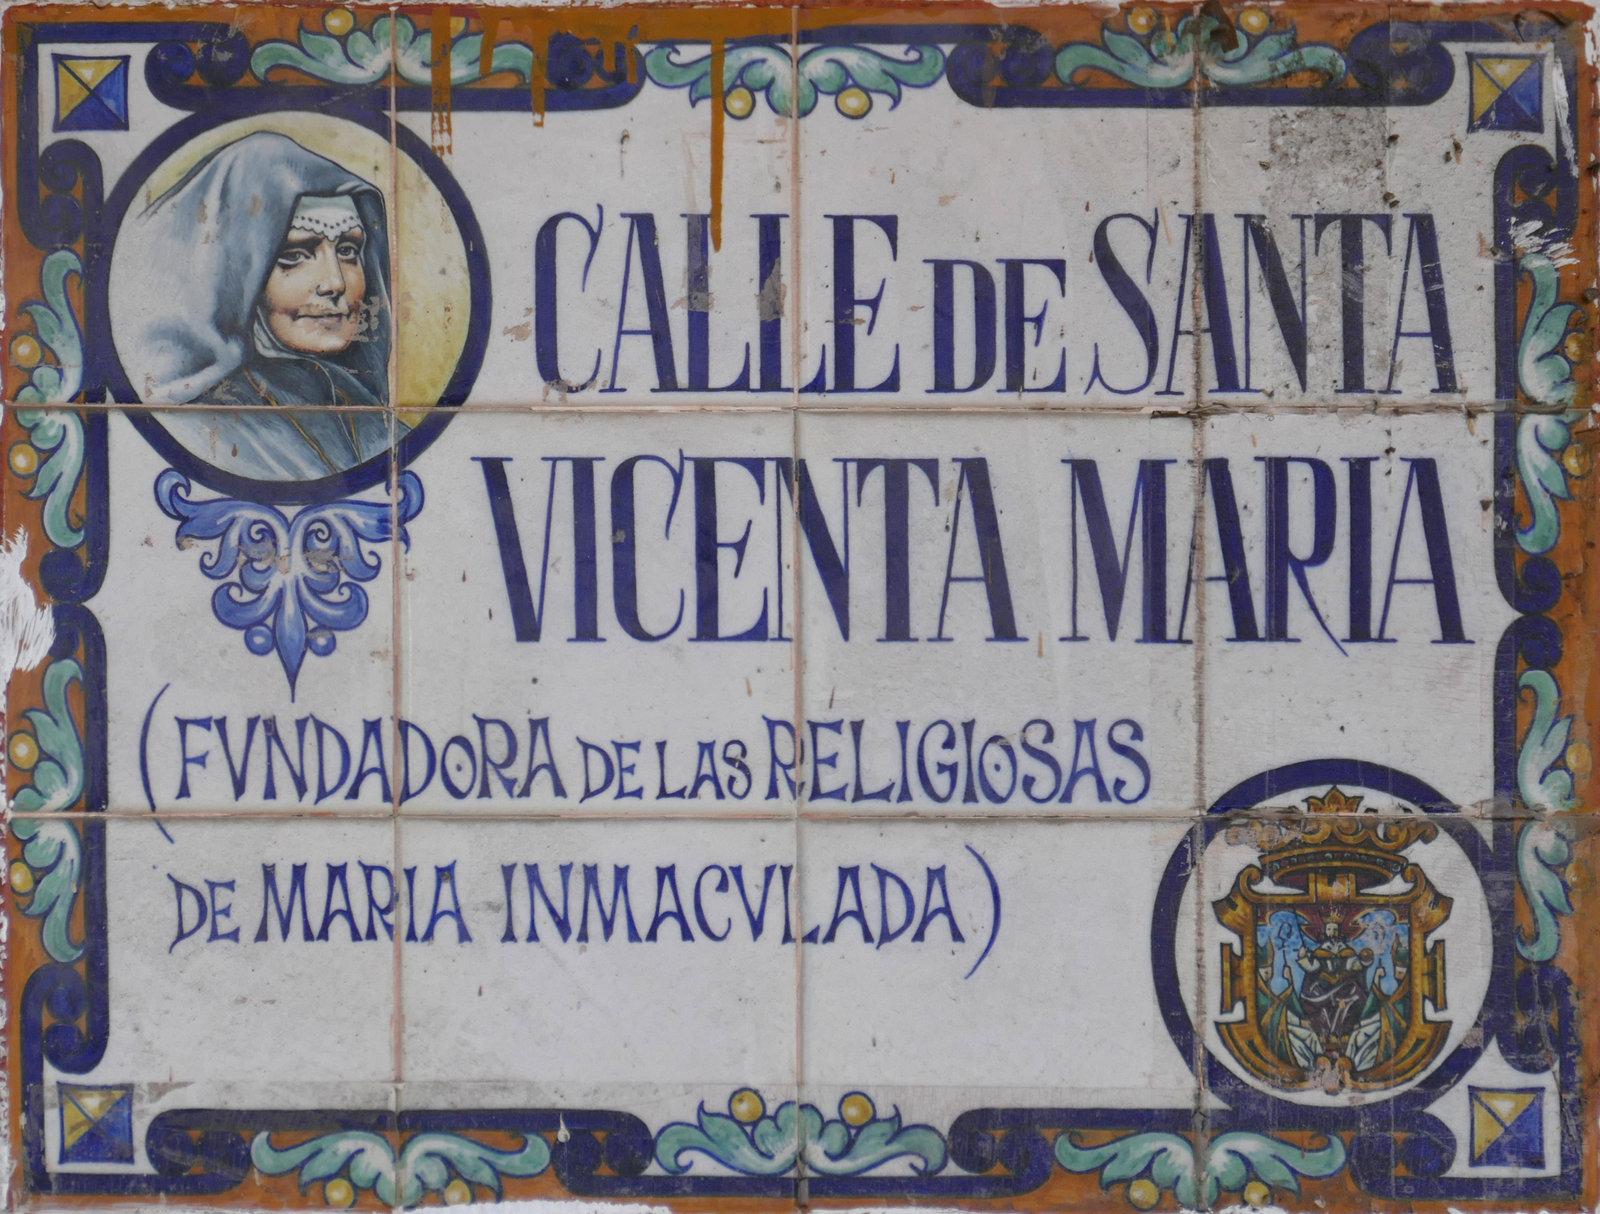 01001. Rótulos de la calle de Santa Vicenta María. Sevilla.